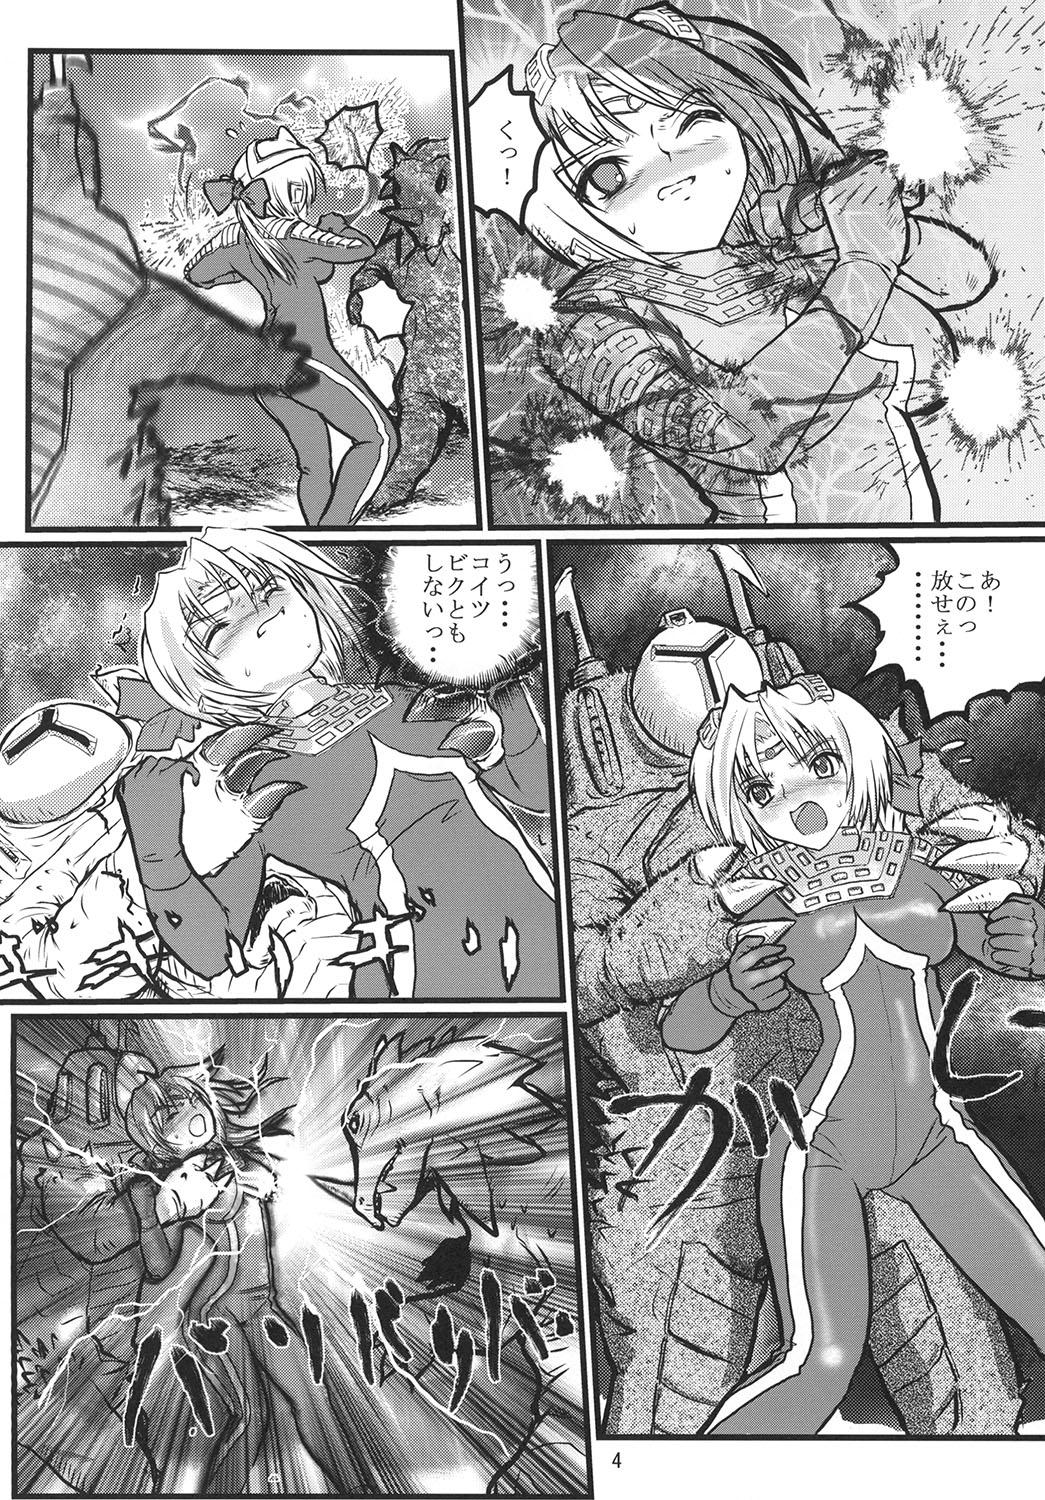 Boobs Ultra Nanako Zettaizetsumei! - Ultraman Sexy Girl - Page 4